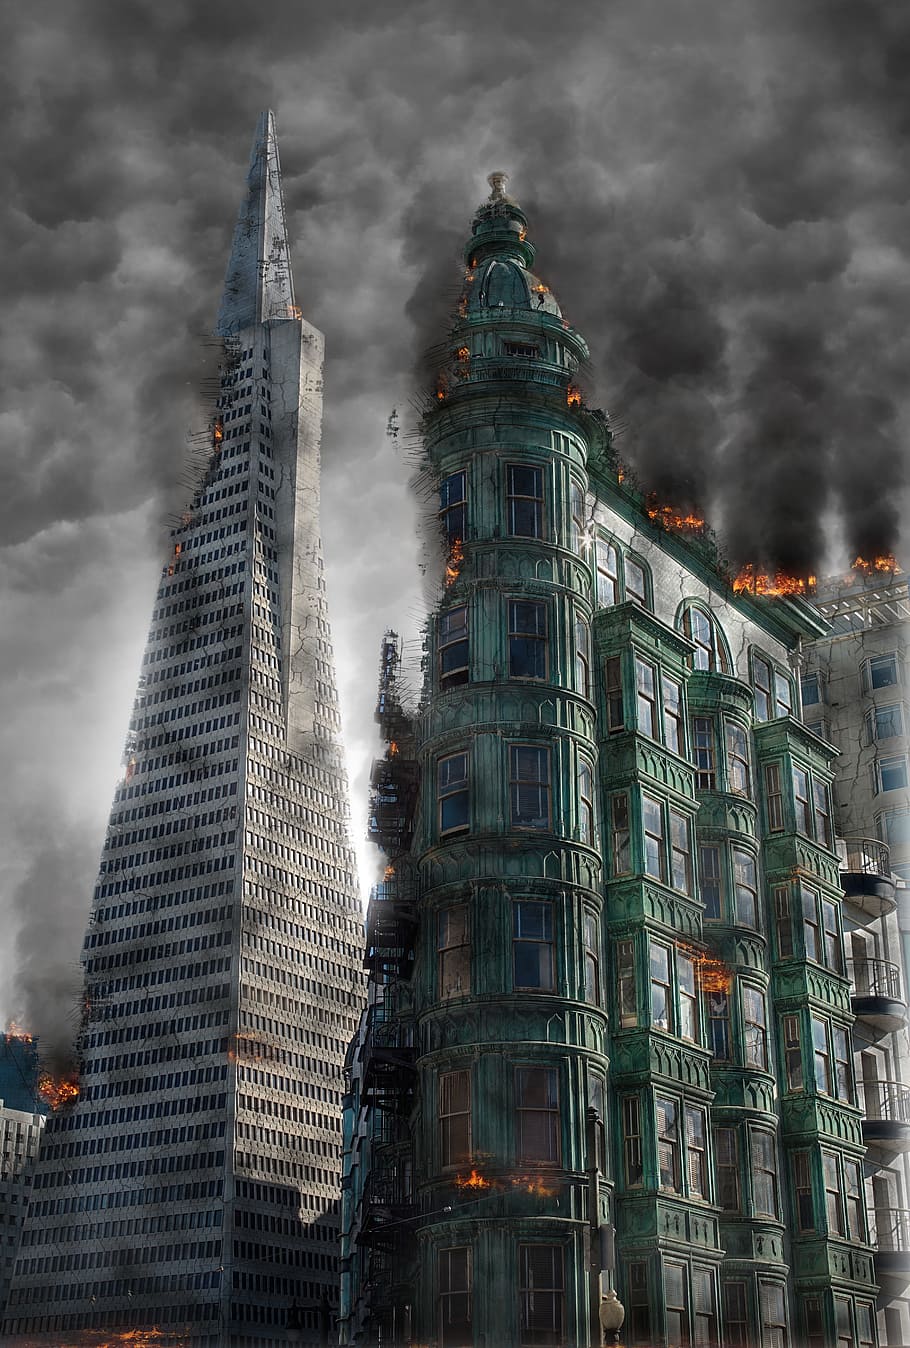 destroyed, buildings, gray, sky illustration, armageddon, destruction, apocalypse, disaster, war, fire